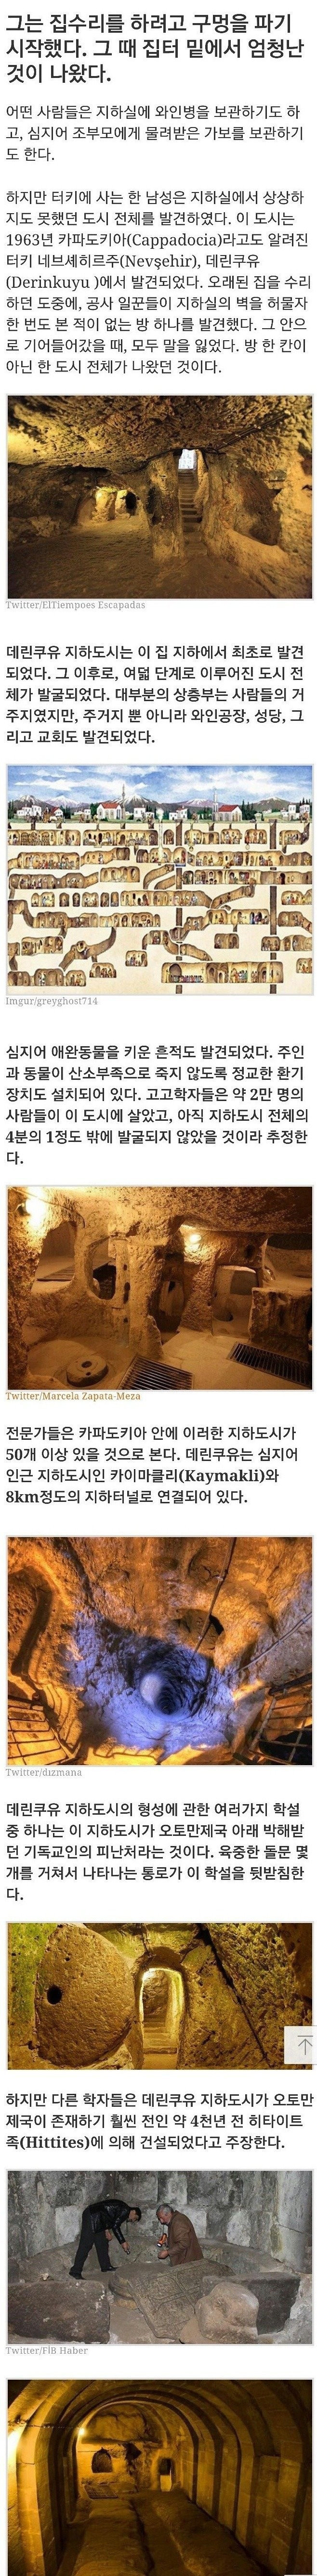 " 터키에서 발견된 4000년전 지하도시 " ... ㄷㄷㄷ(0)